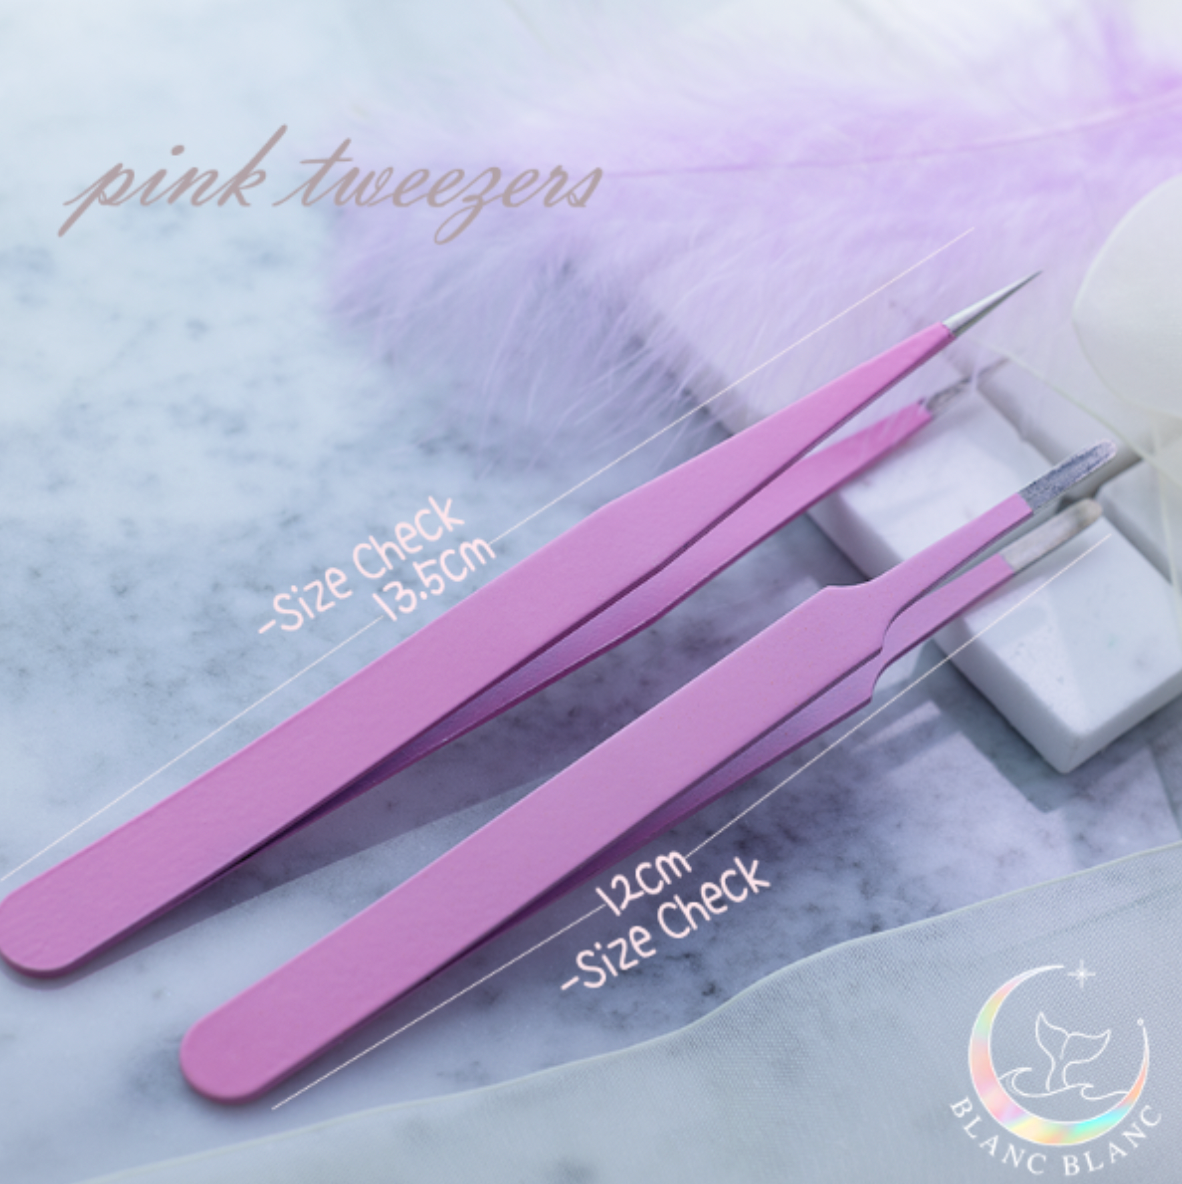 BLANC BLANC Pink tweezers - 2 types